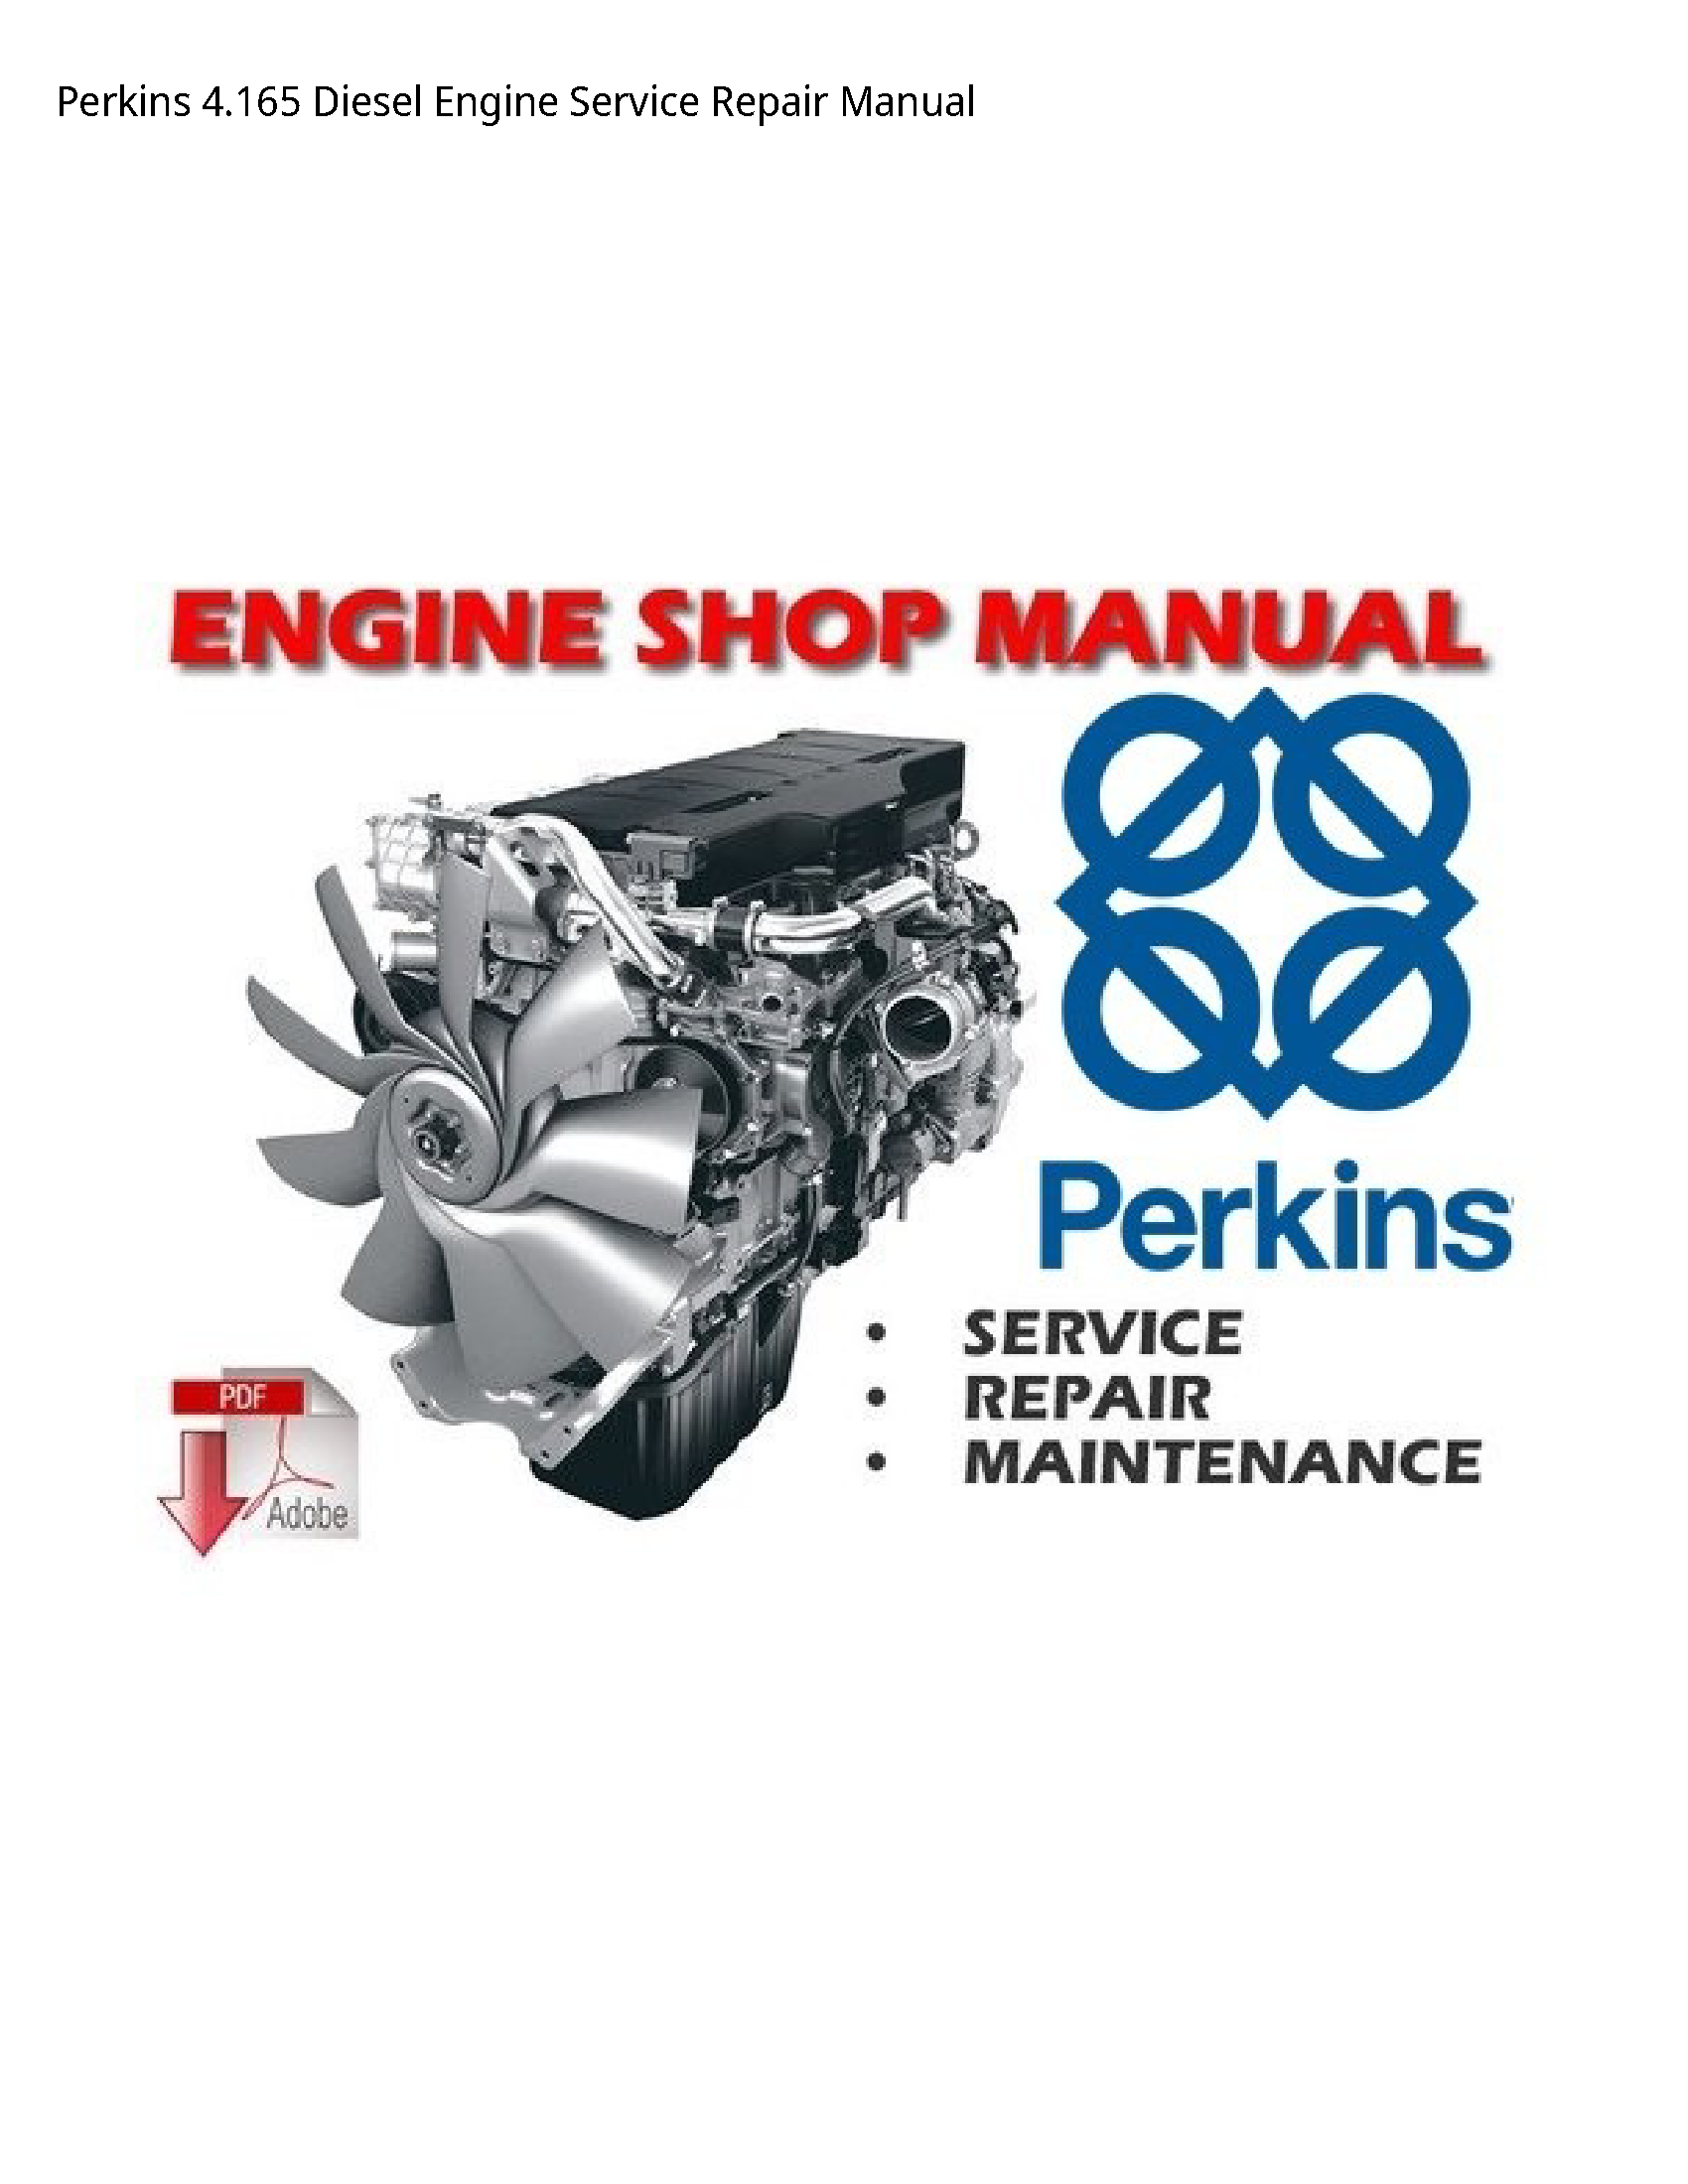 Perkins 4.165 Diesel Engine manual